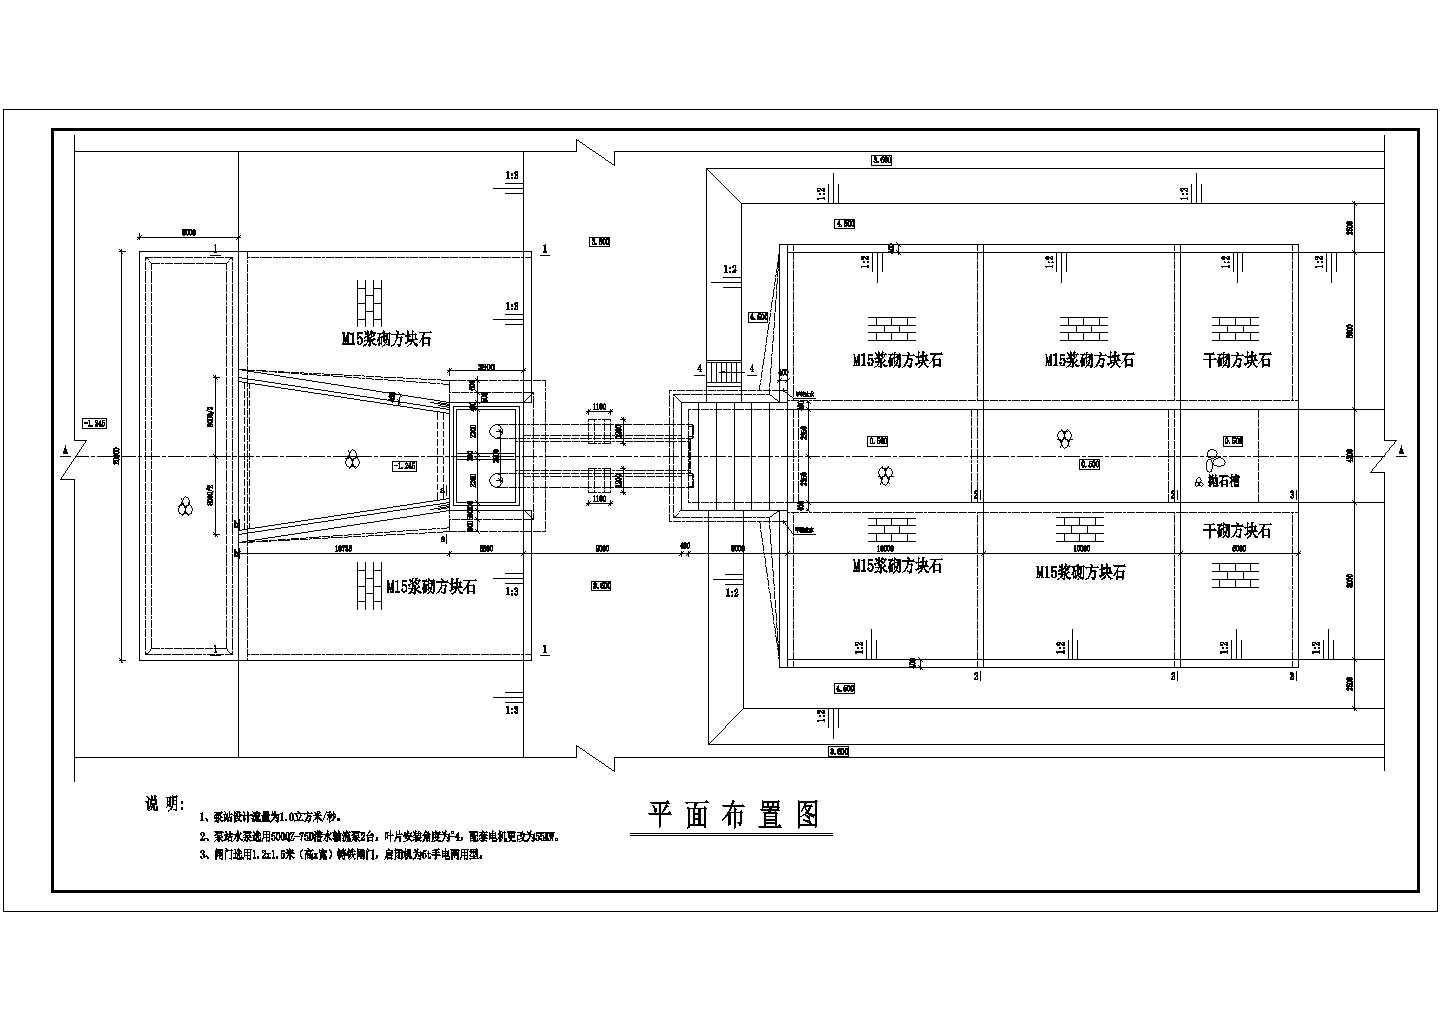 水利工程技施阶段某泵站结构钢筋图